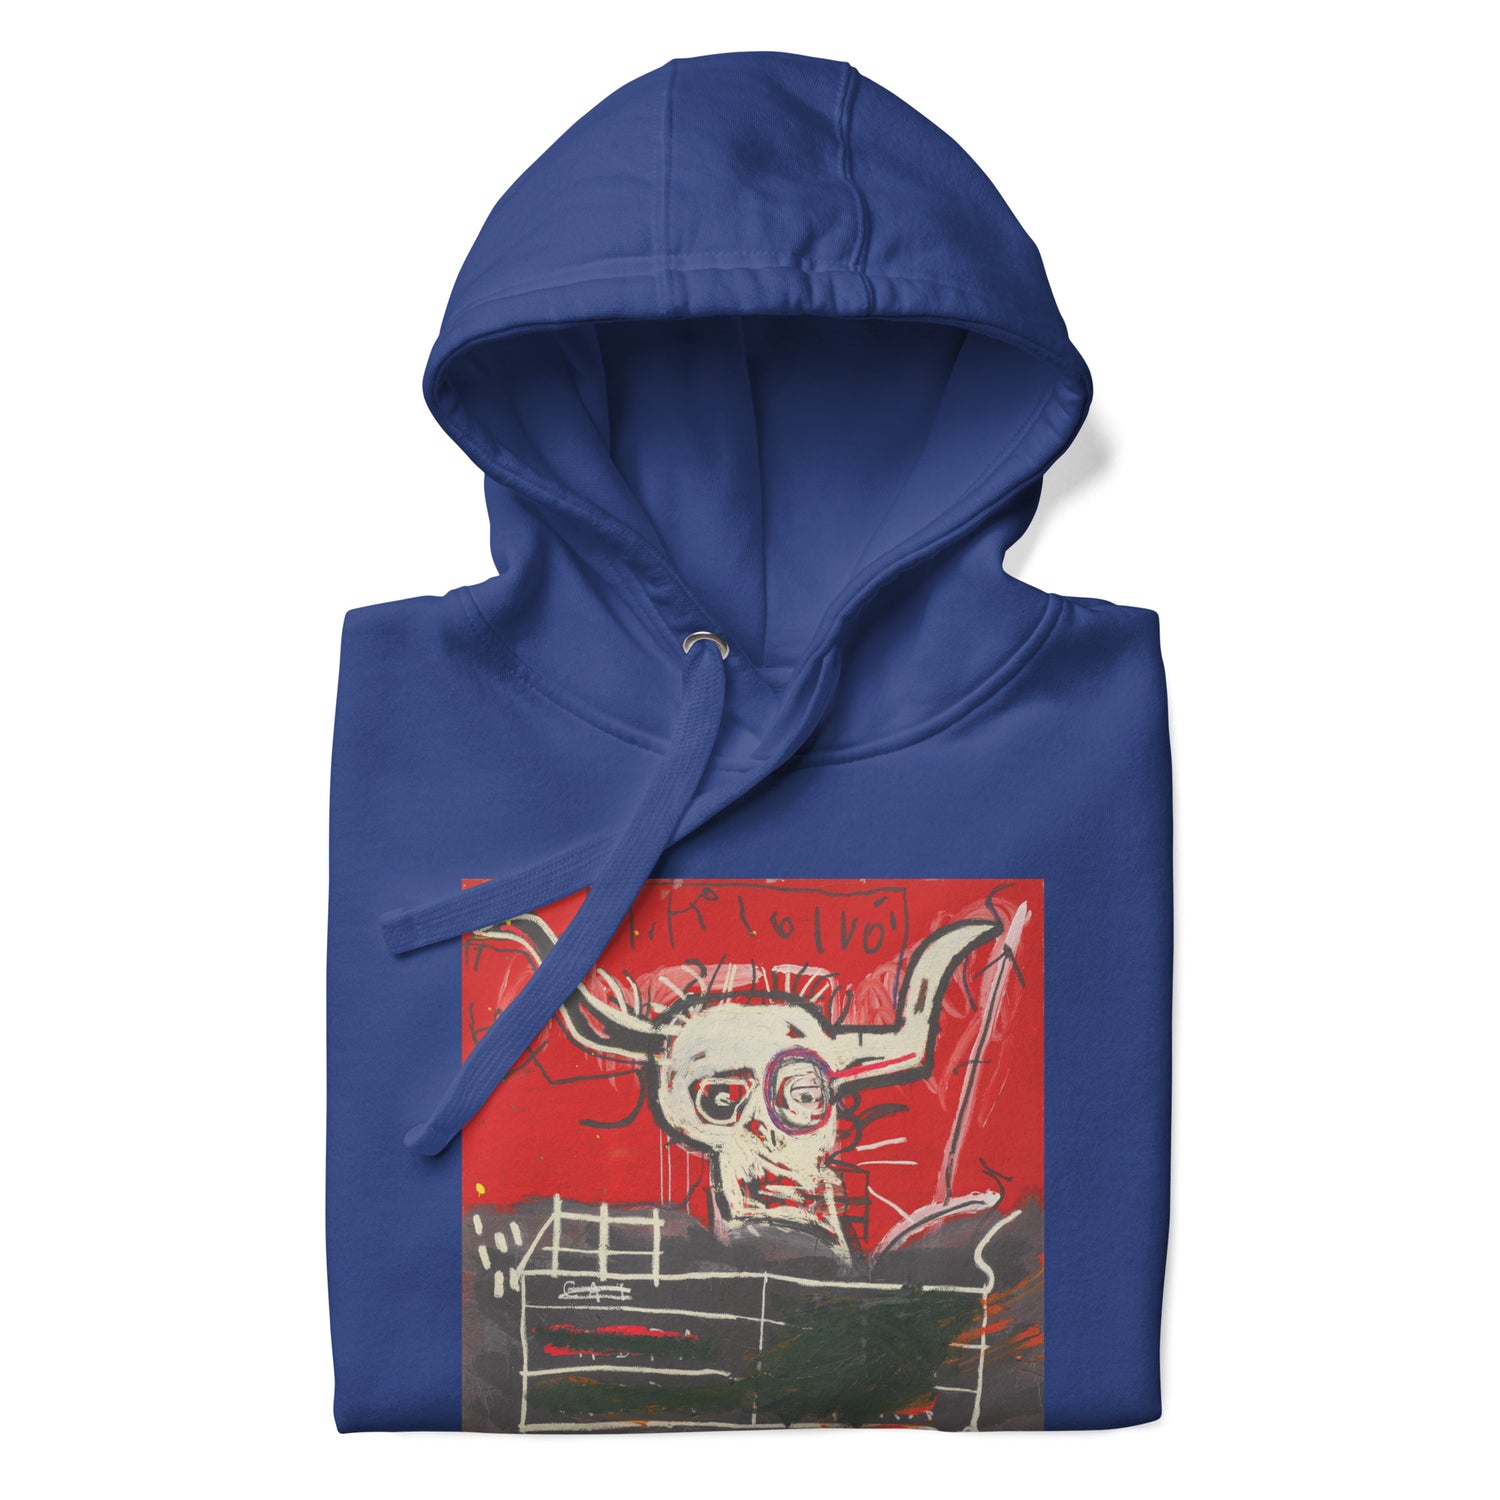 Jean-Michel Basquiat "Cabra" Artwork Printed Premium Streetwear Sweatshirt Hoodie Royal Blue